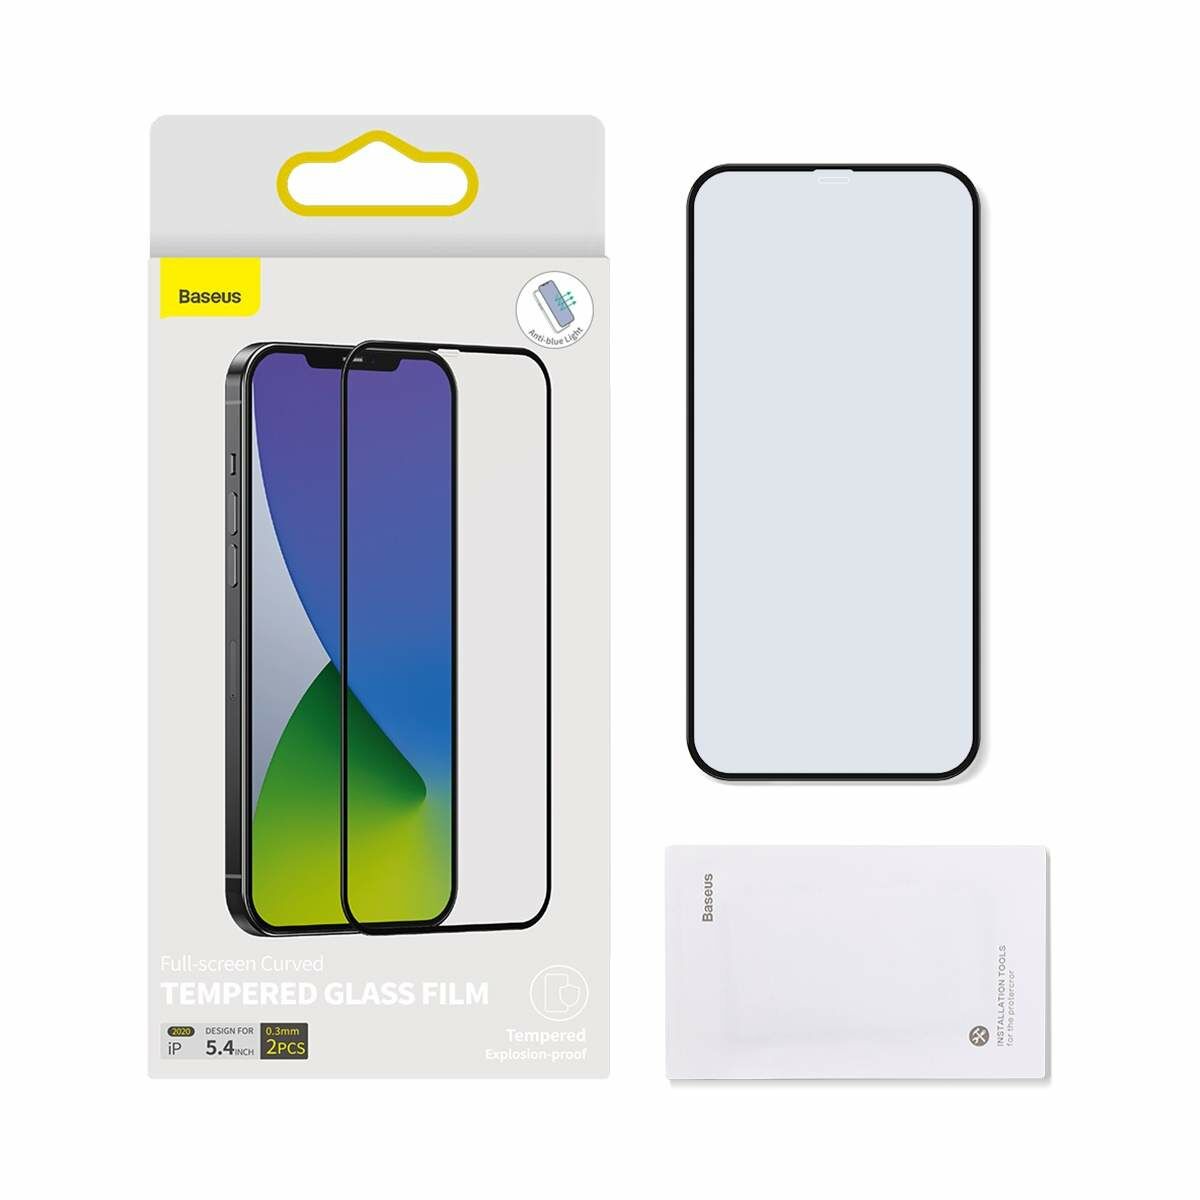 Kép 4/13 - Baseus iPhone 12 mini 0.3 mm, teljes felületre, lekerekített edzett üveg, kékfény szűrős (2 db), fekete (SGAPIPH54N-KB01)